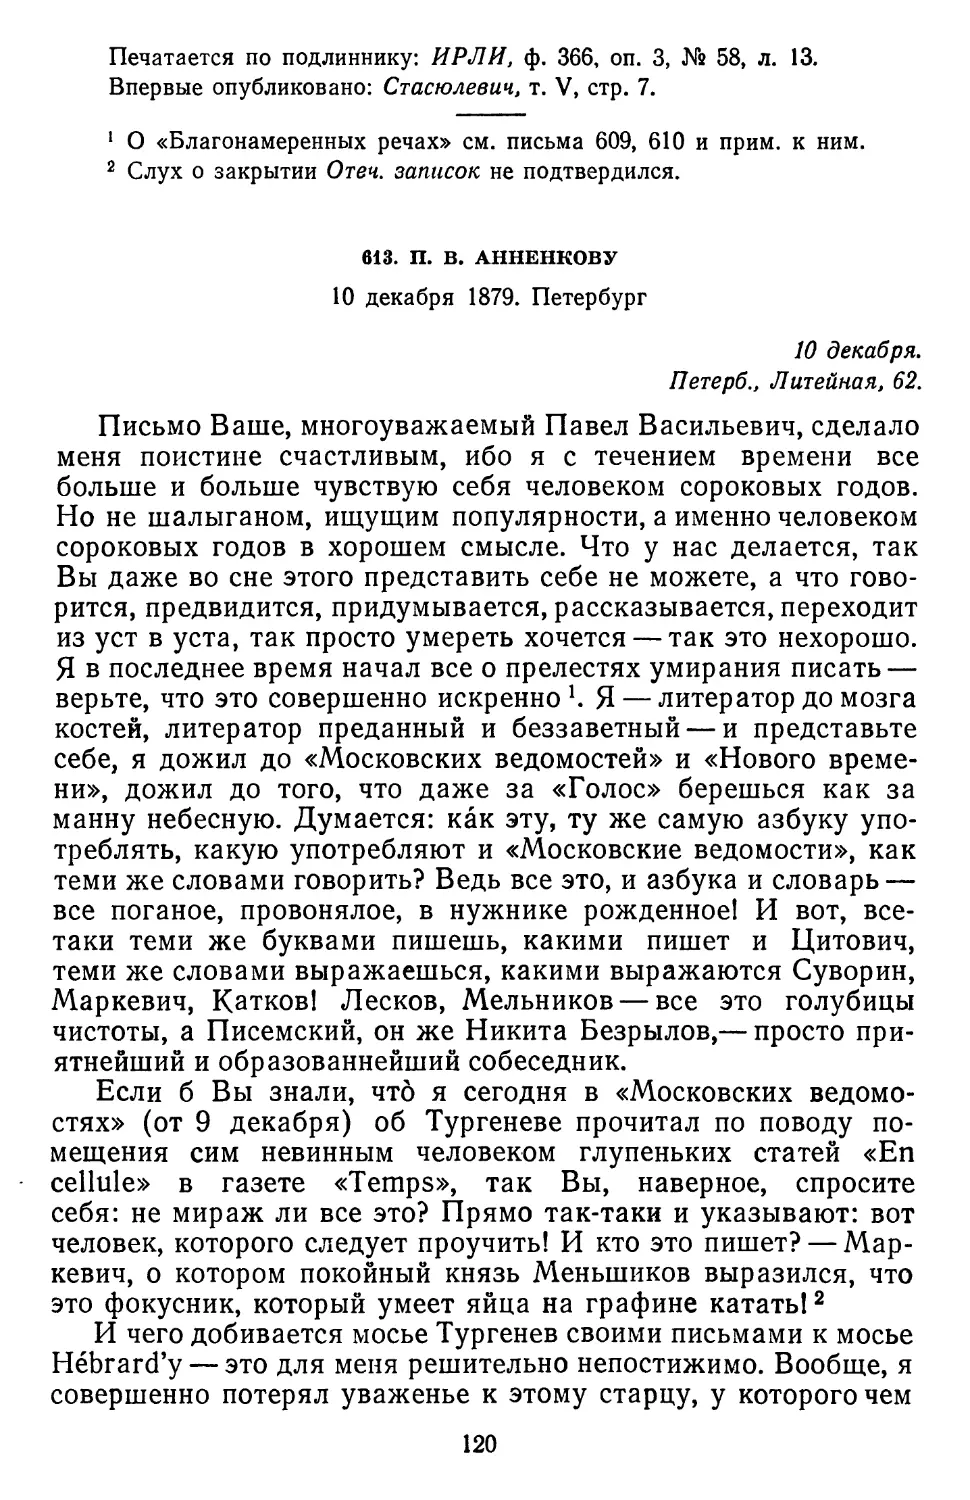 613.П. В.Анненкову. 10 декабря 1879. Петербург